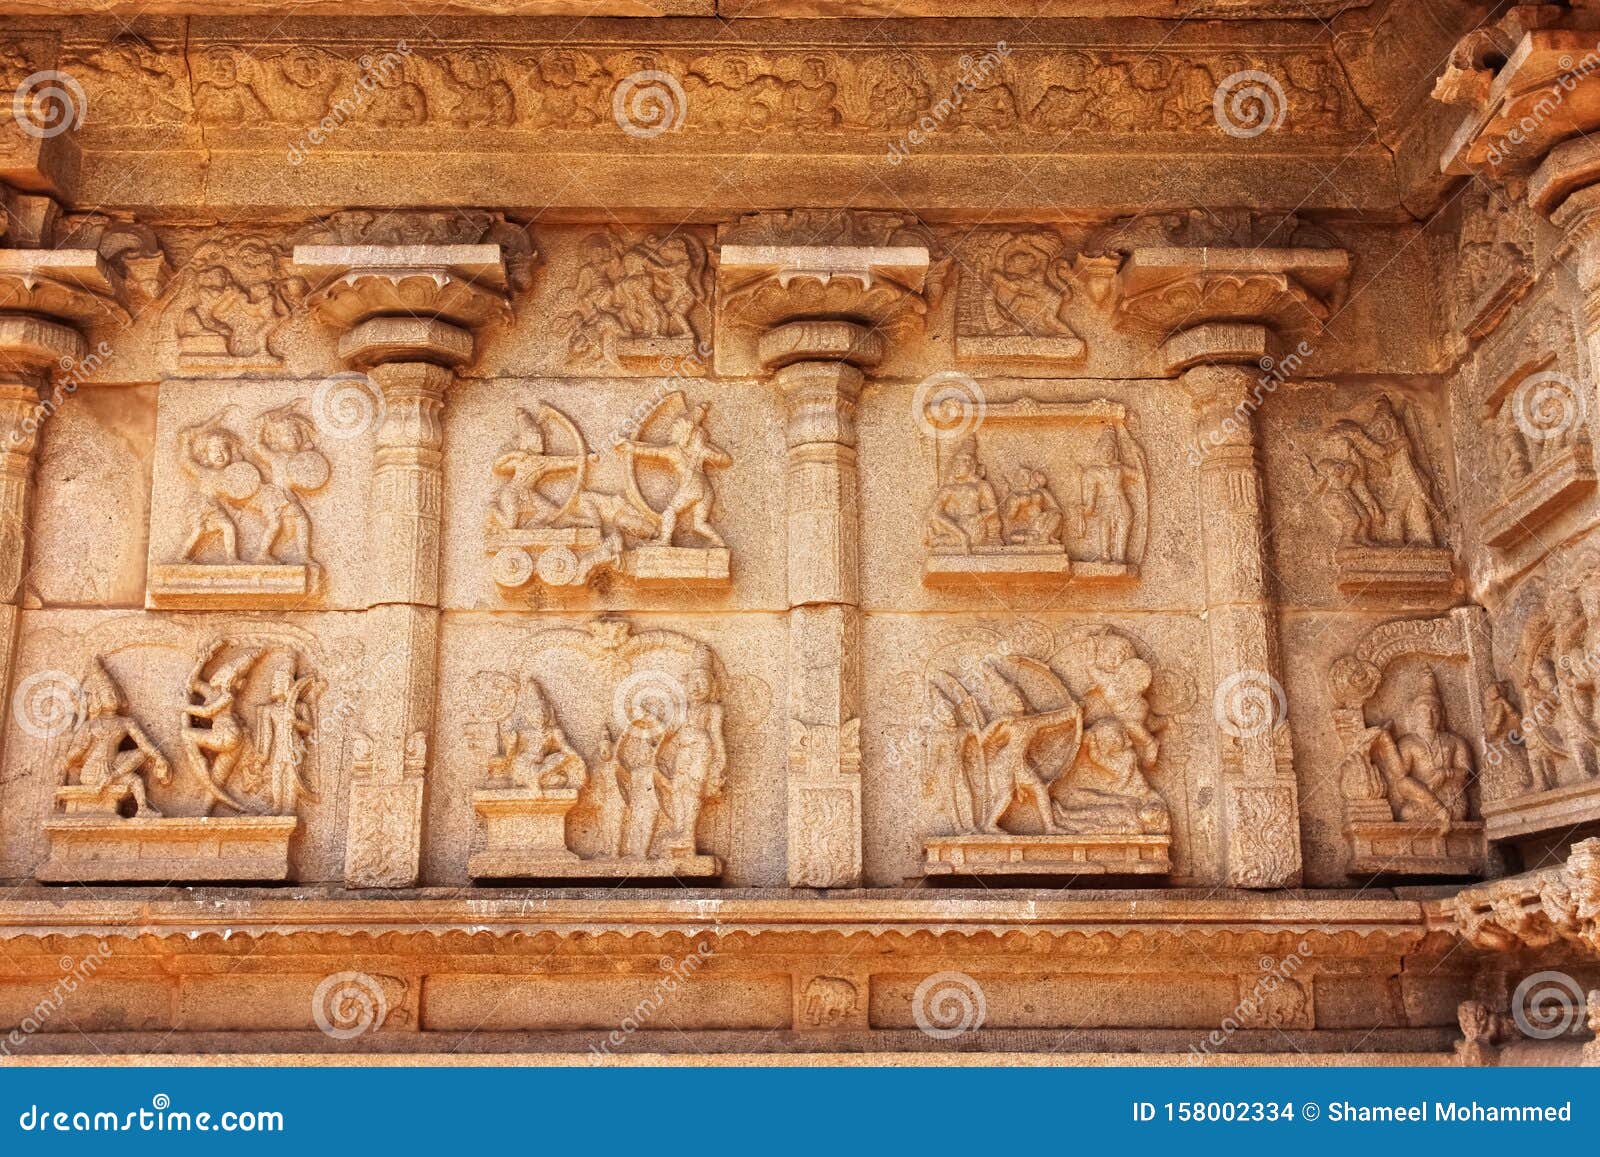 Sculptures Wall Ancient Hindu Temple Ruins Hampi India Walls 158002334 